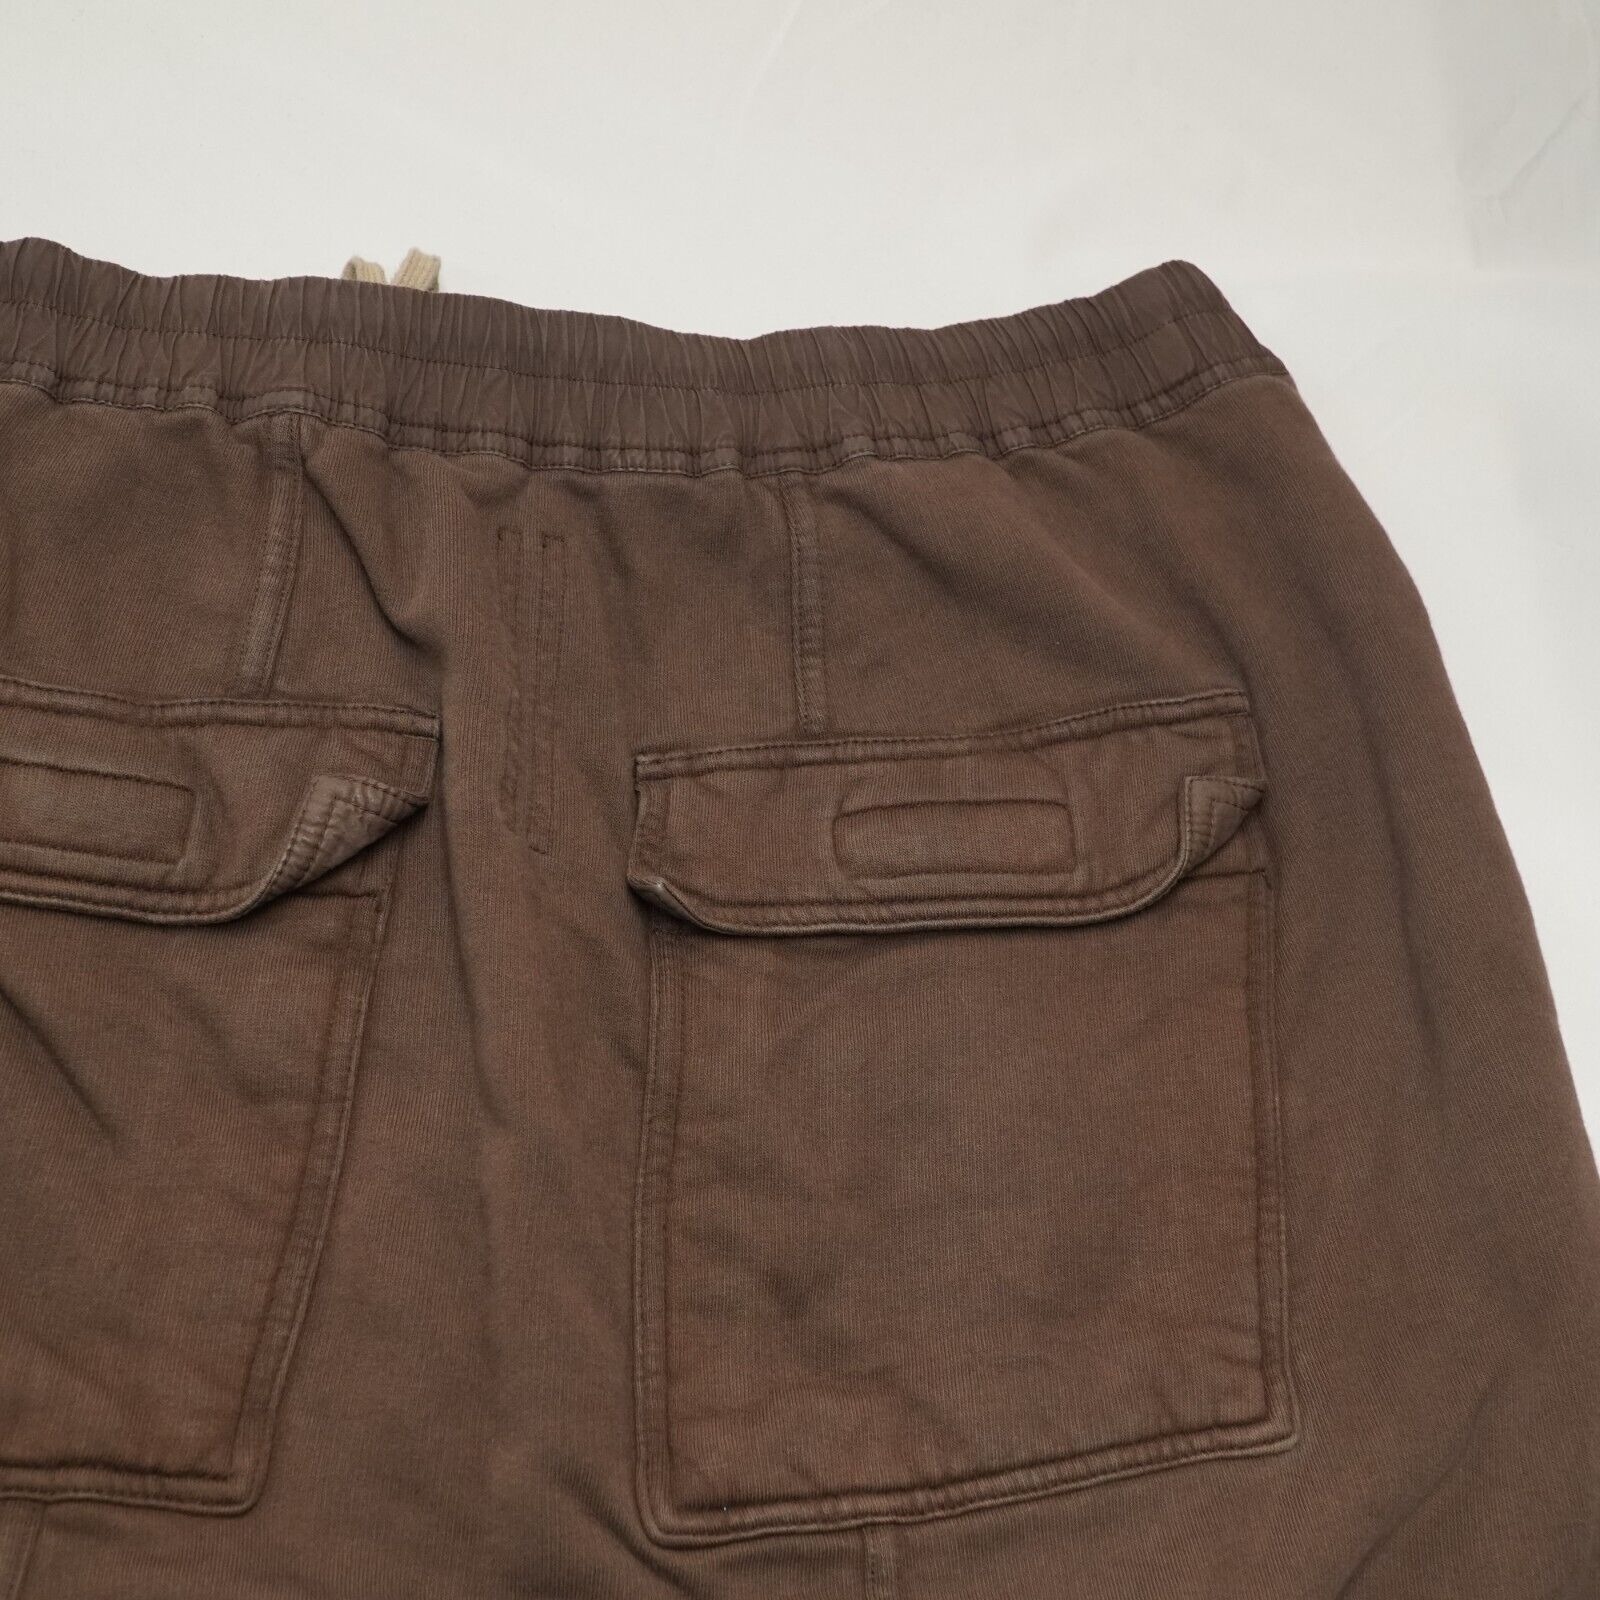 Rick Shorts Drop Crotch Cotton Macassar Brown Large - 16